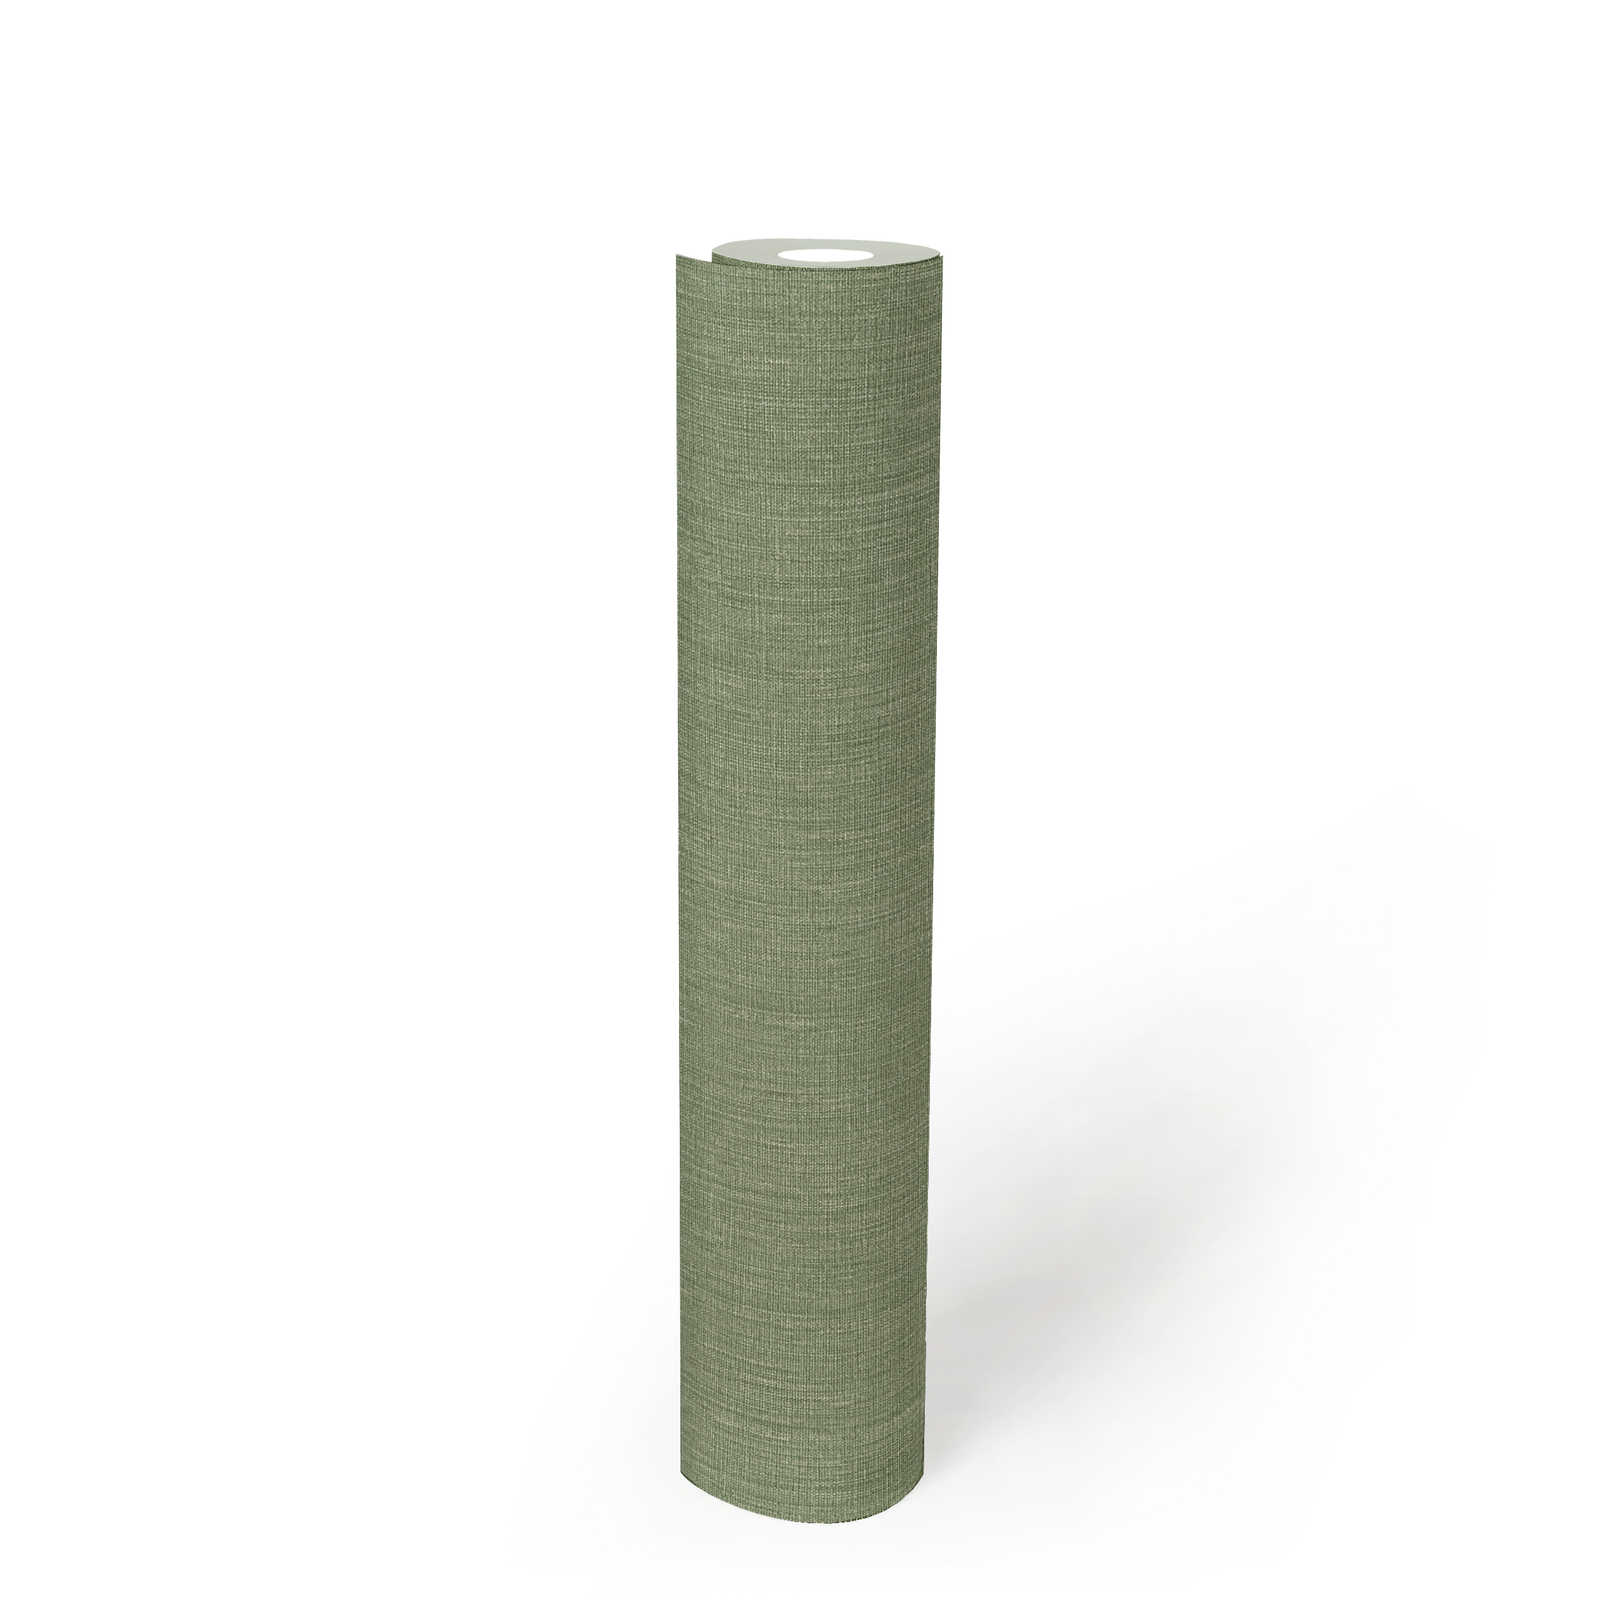             Vliesbehang met lichte structuur in textiellook - groen
        